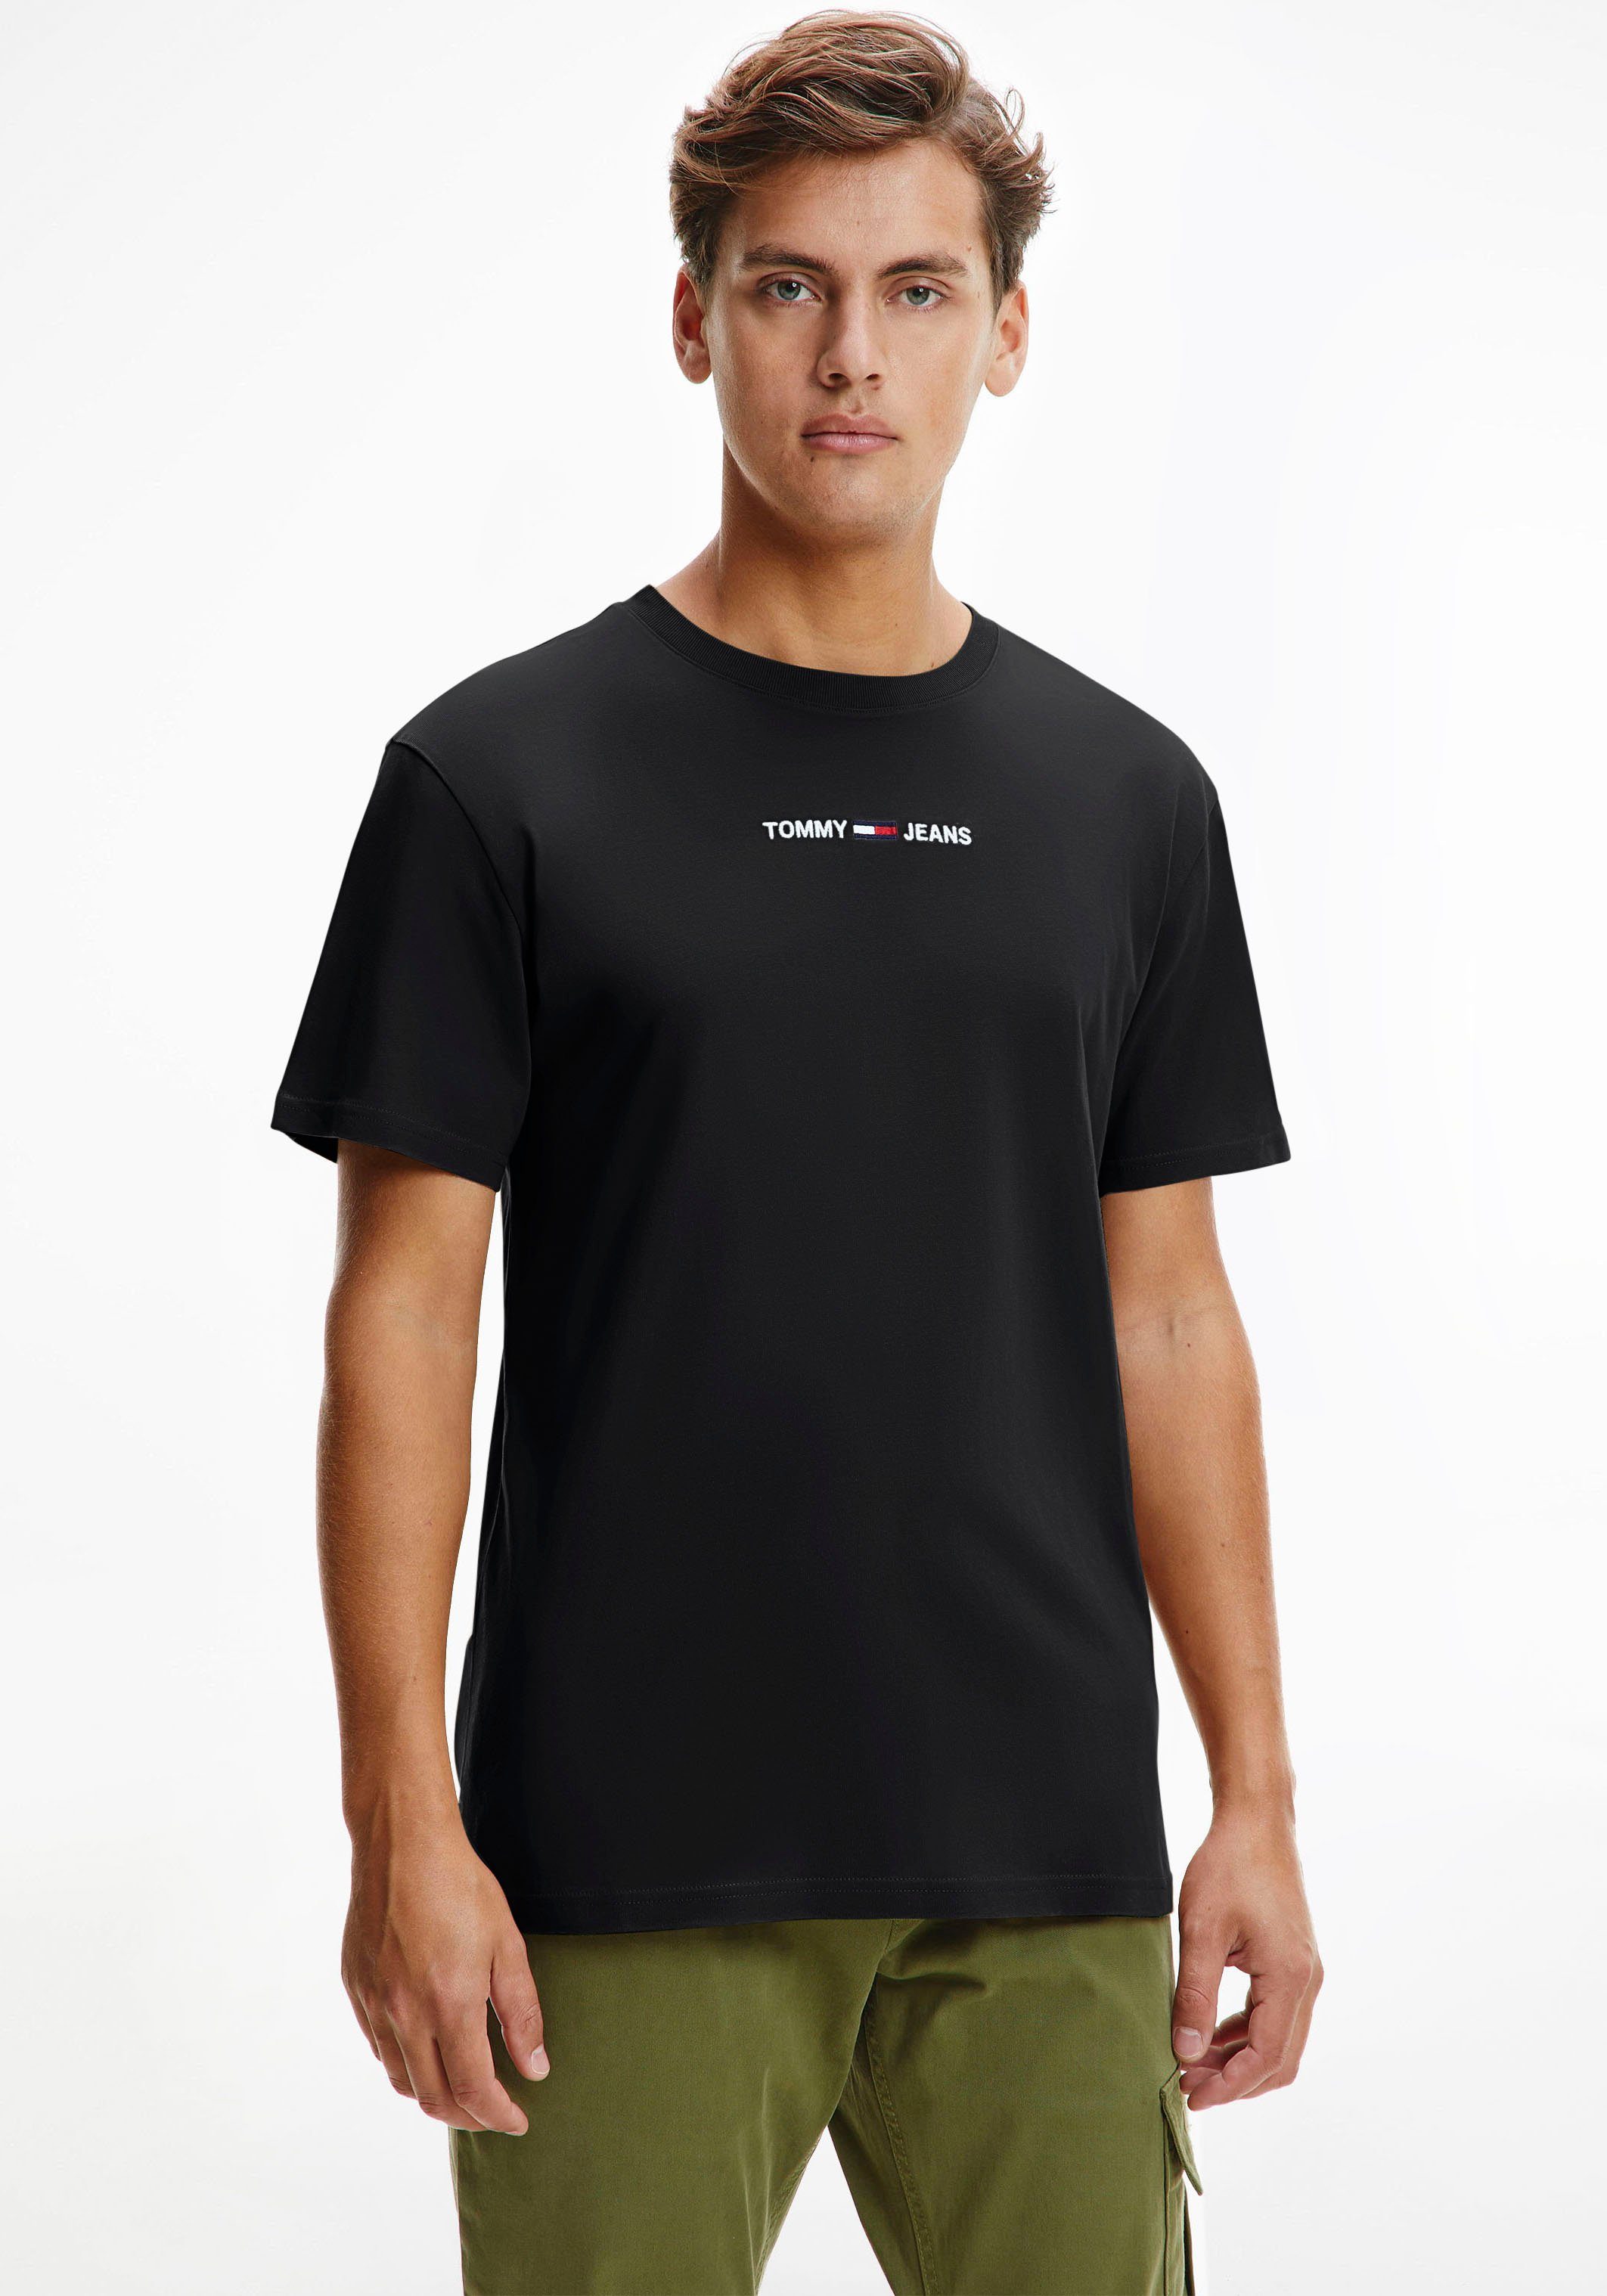 Tommy Hilfiger Herren T-Shirts online kaufen | OTTO